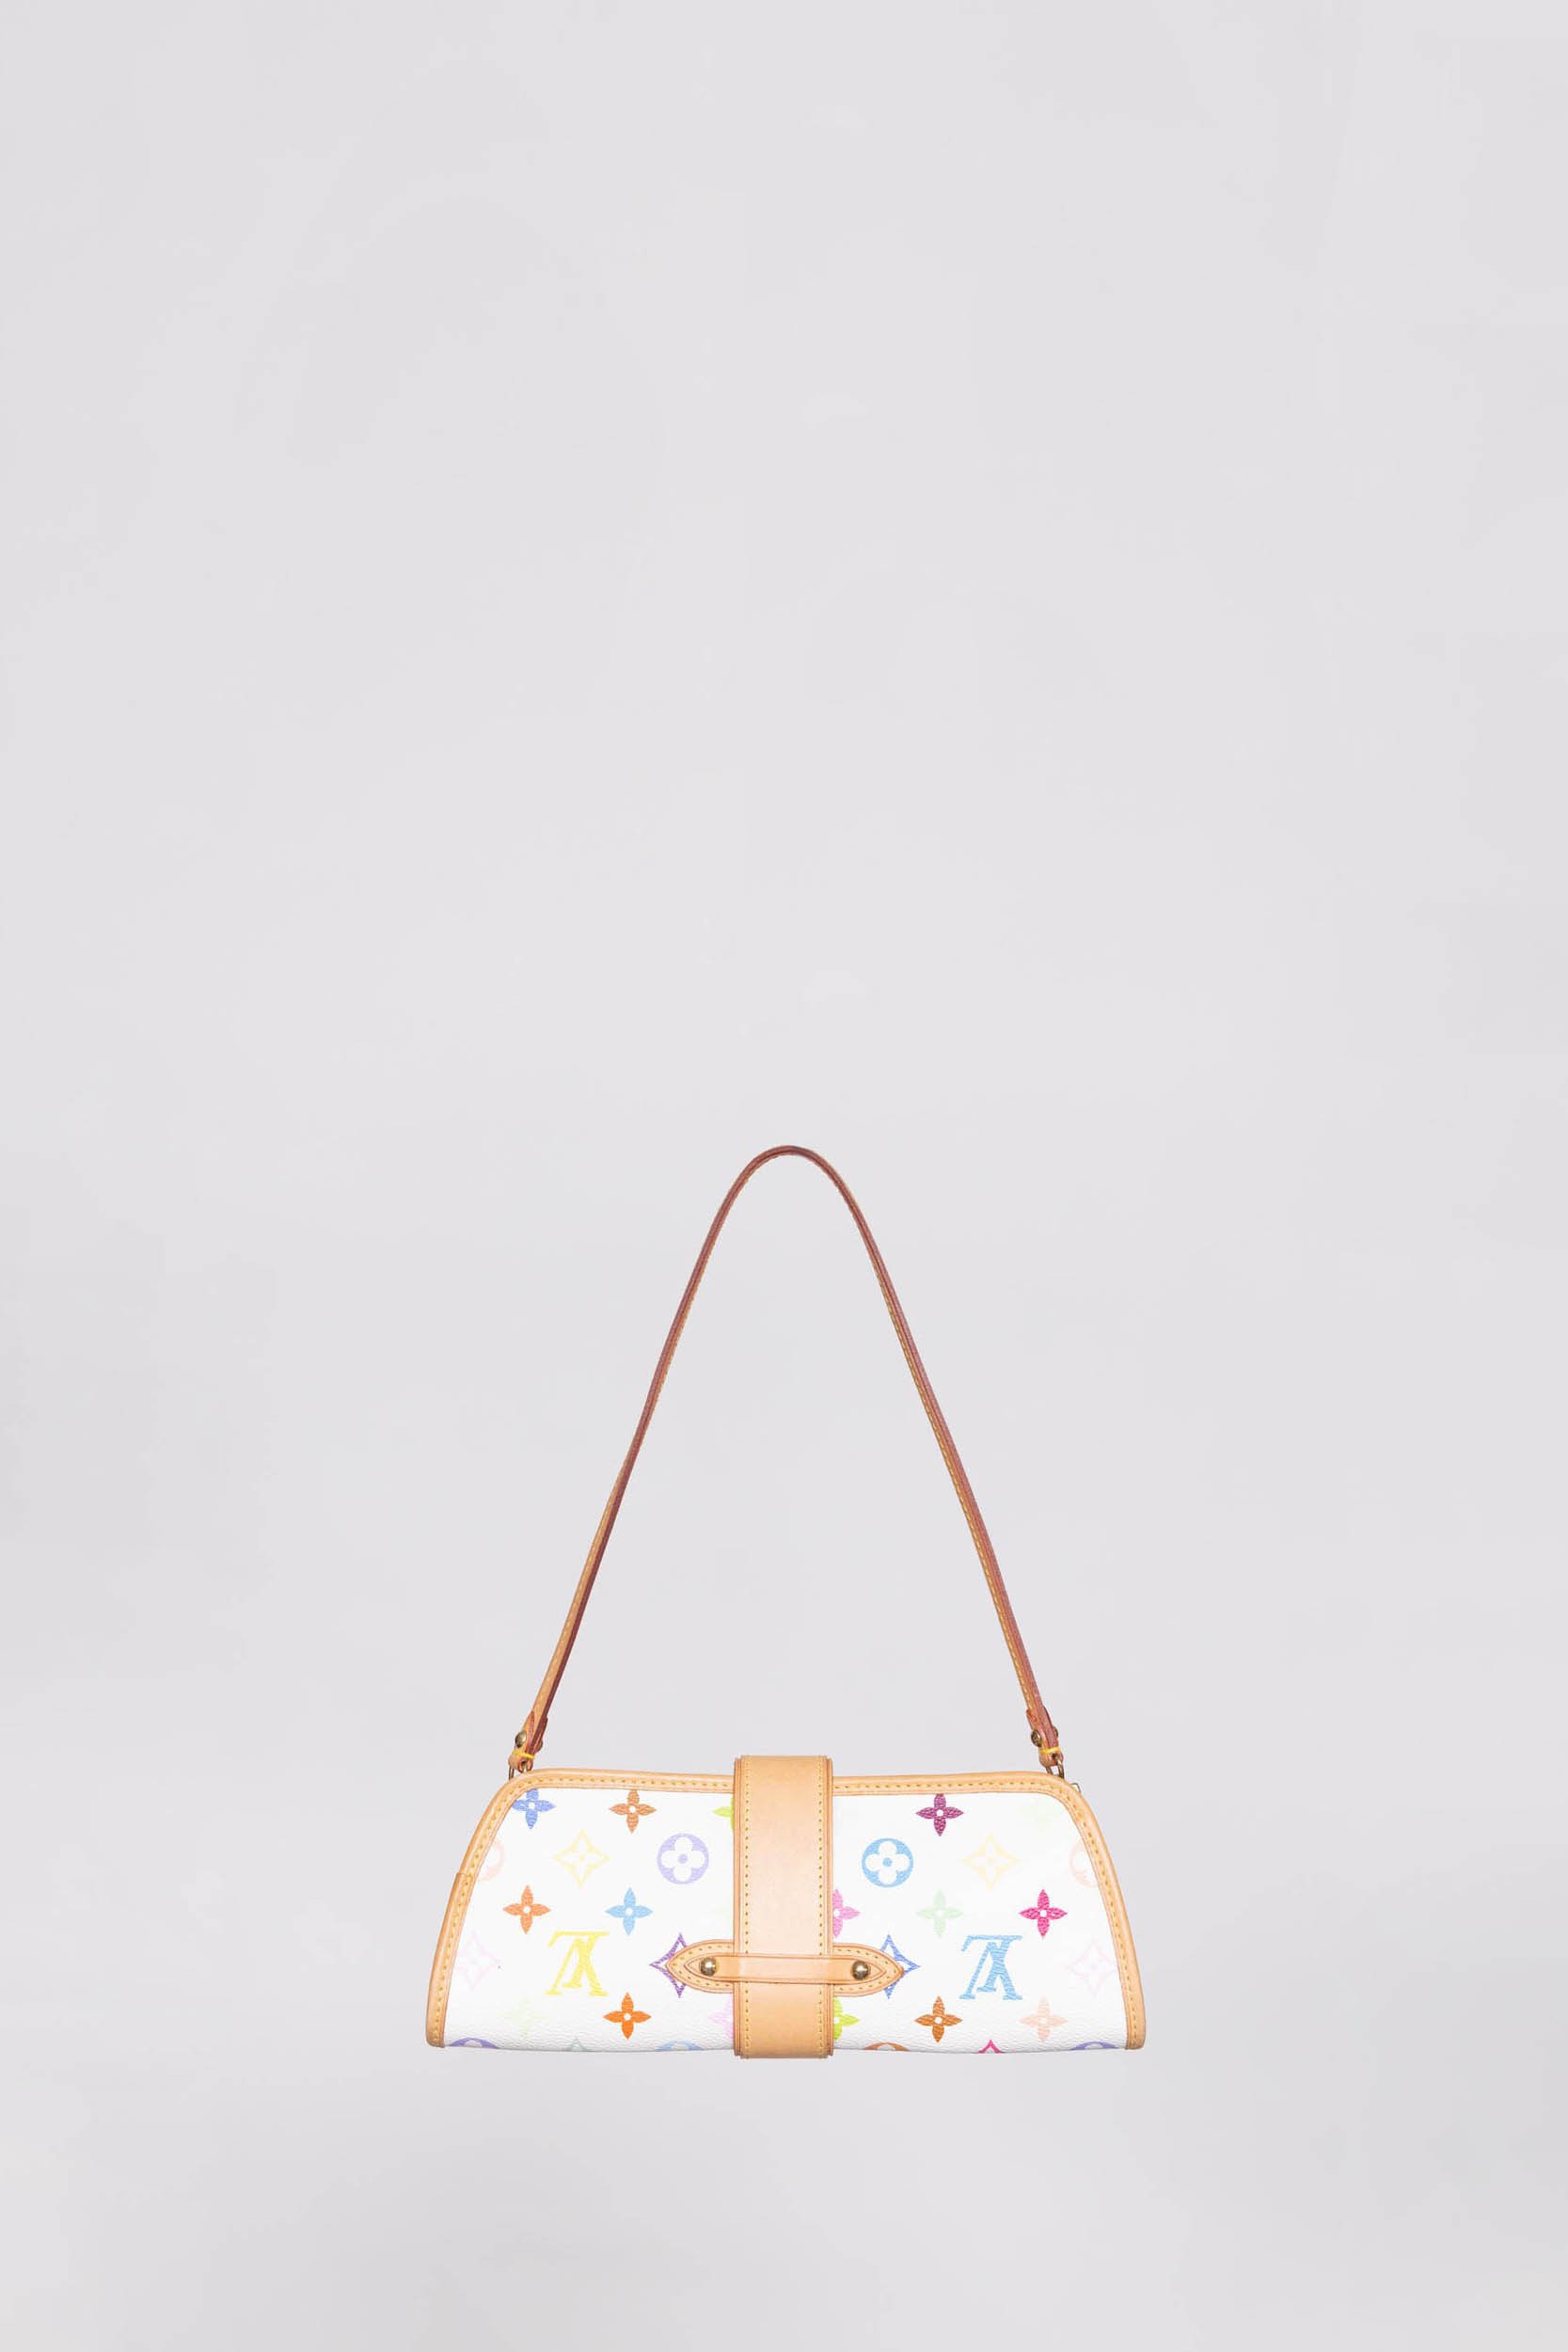 Louis Vuitton Shirley Handbag Monogram Multicolor Multicolor 1359391